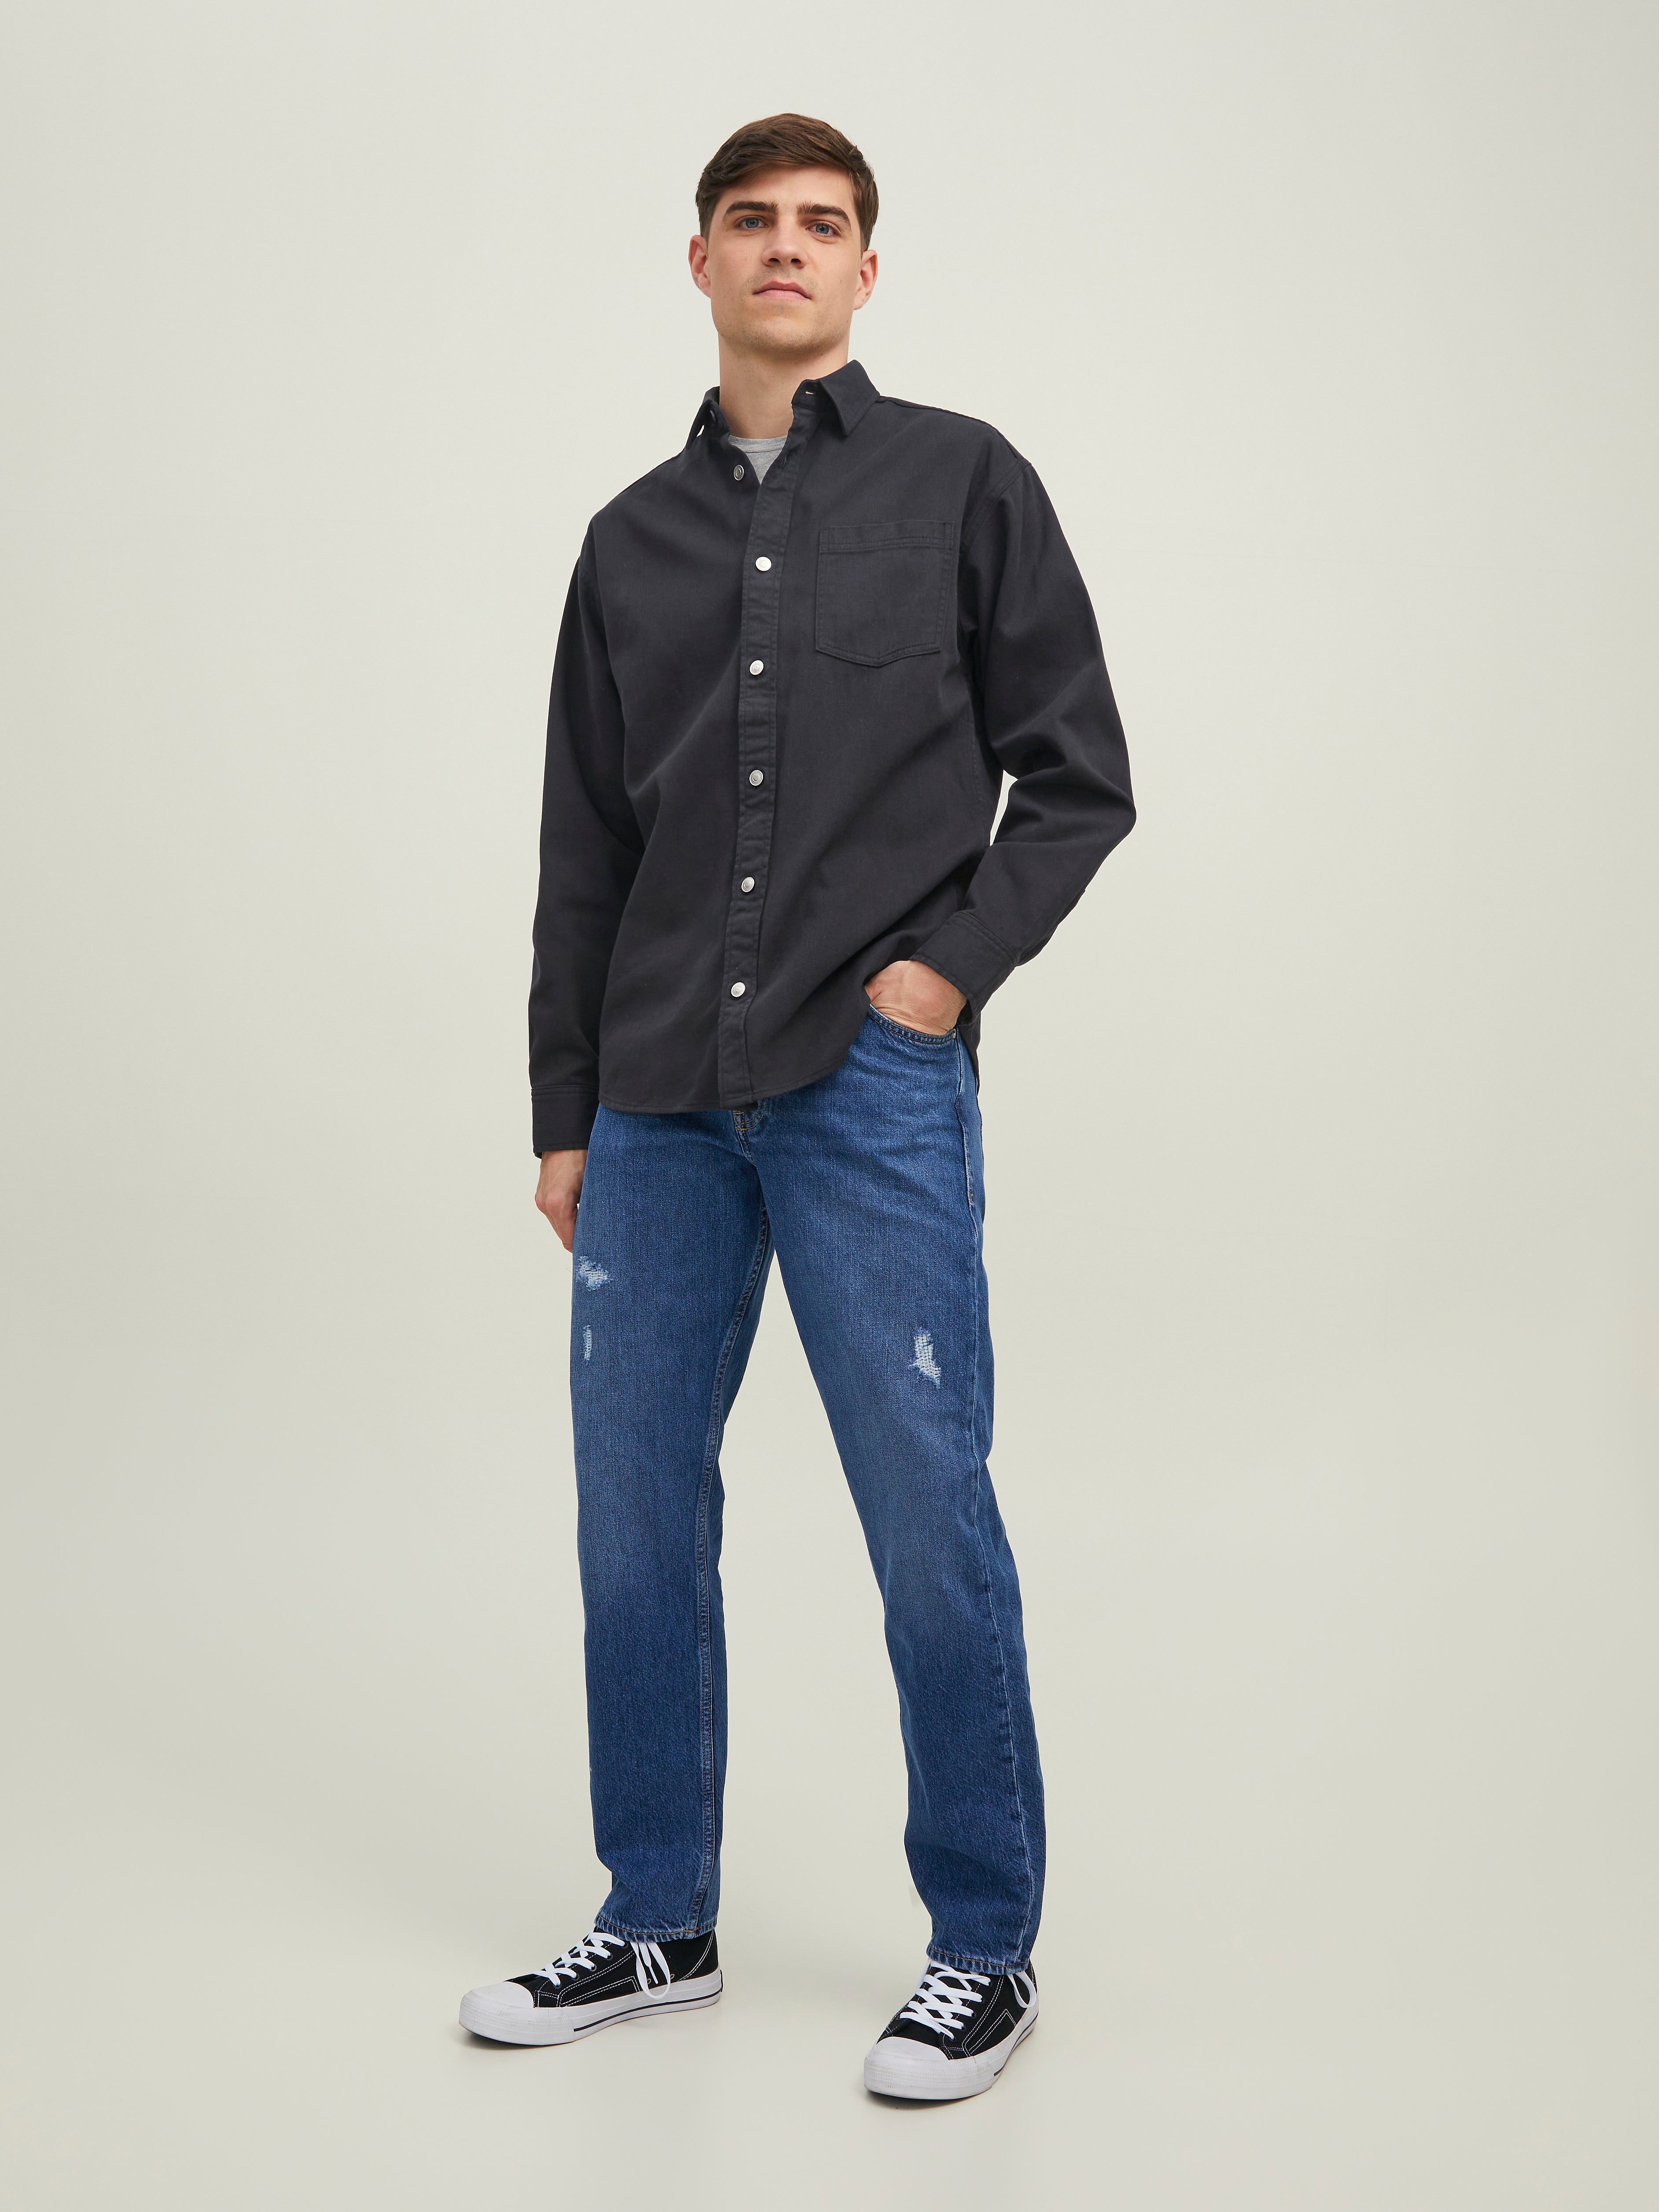 Buy Men Navy Slim Fit Stripe Full Sleeves Casual Shirt Online - 713057 |  Louis Philippe